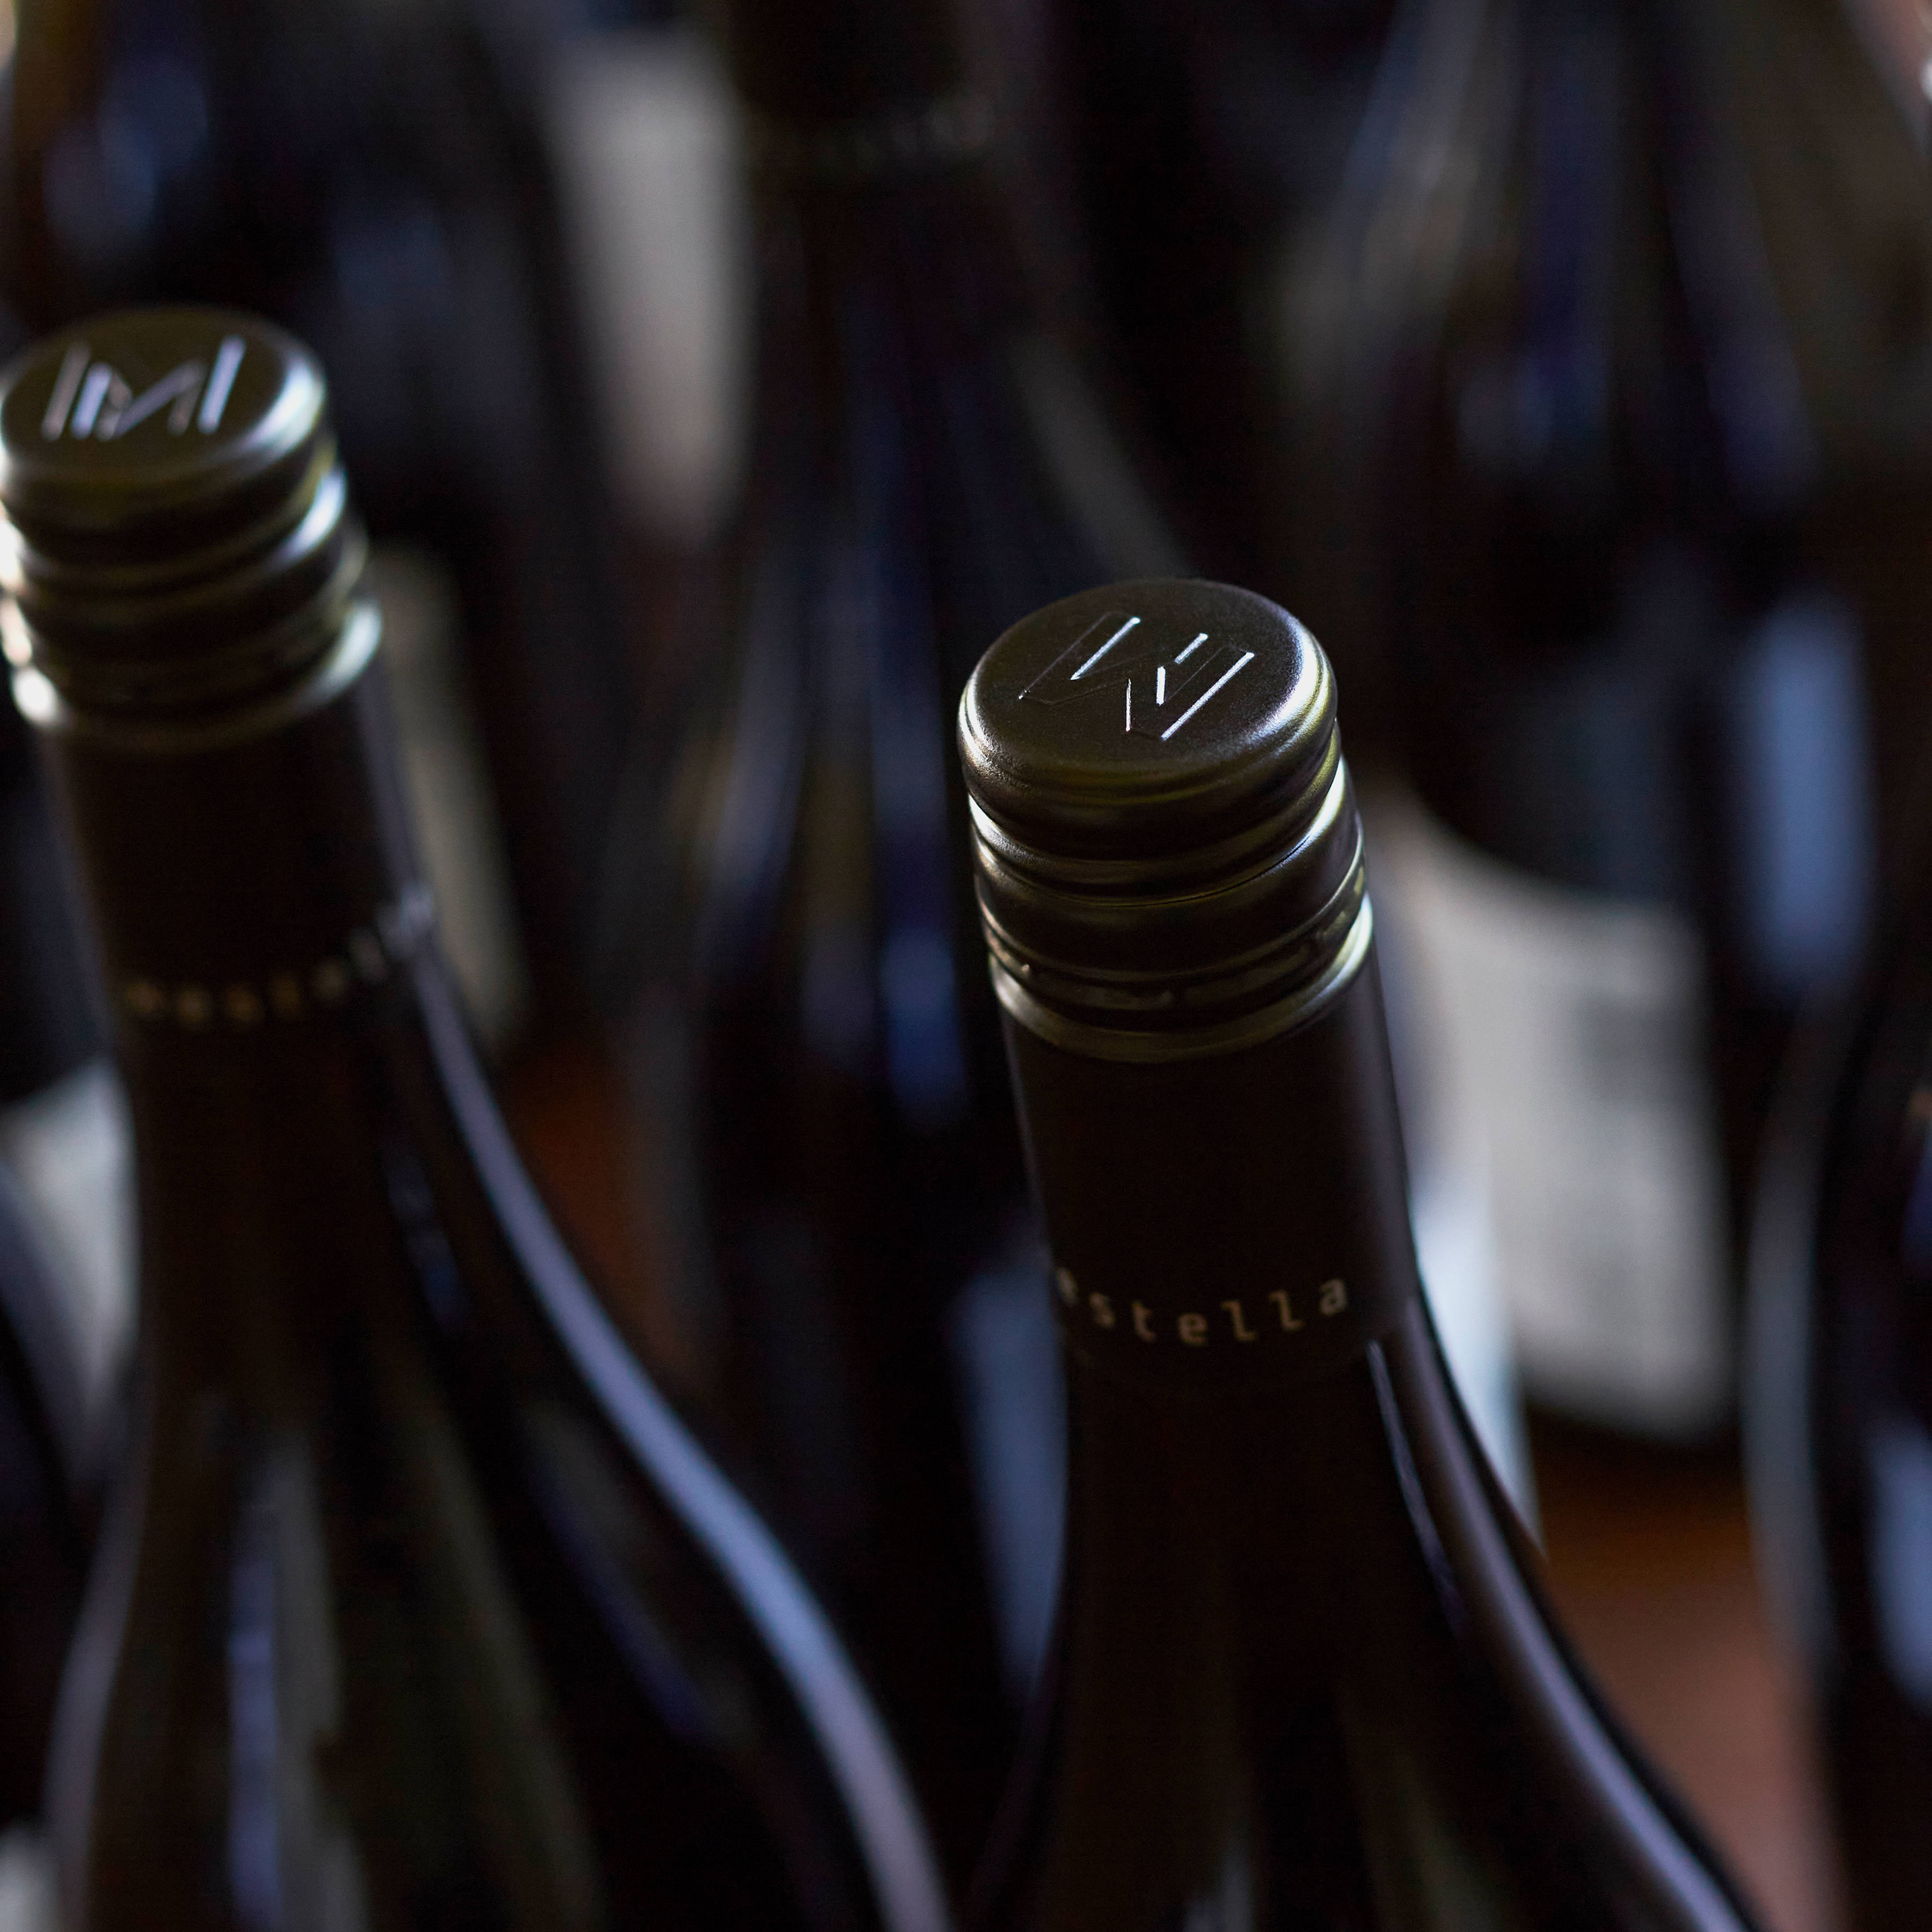 The top detail of Westella wine bottles, an embossed W. Photo: Renee Hodskiss.